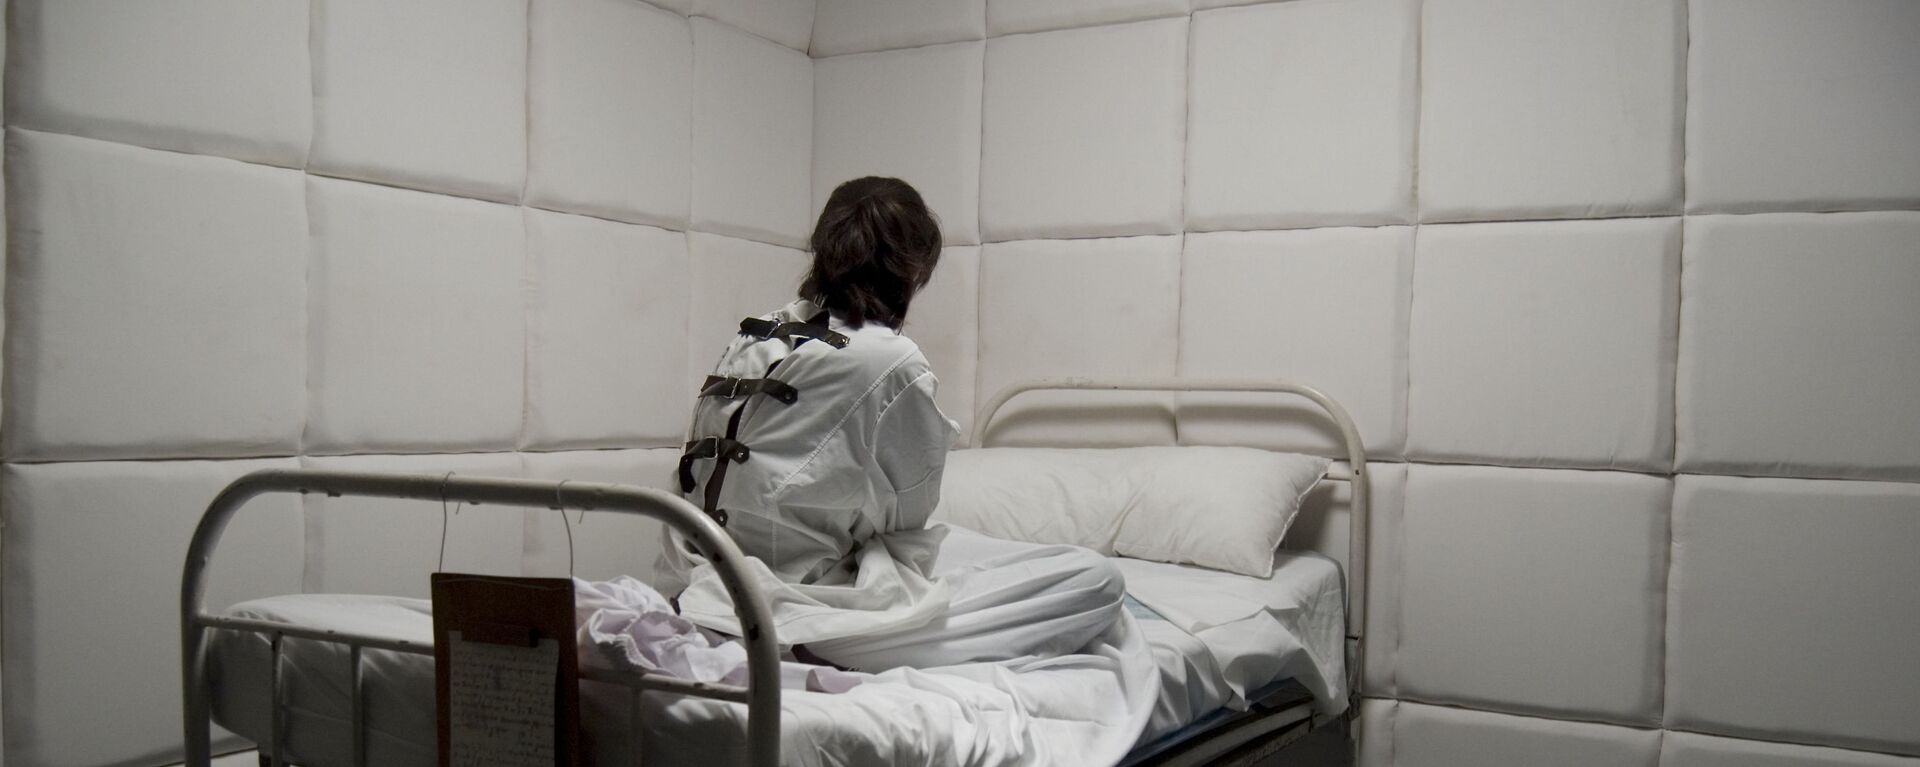  Một người phụ nữ trong bệnh viện tâm thần - Sputnik Việt Nam, 1920, 01.05.2022